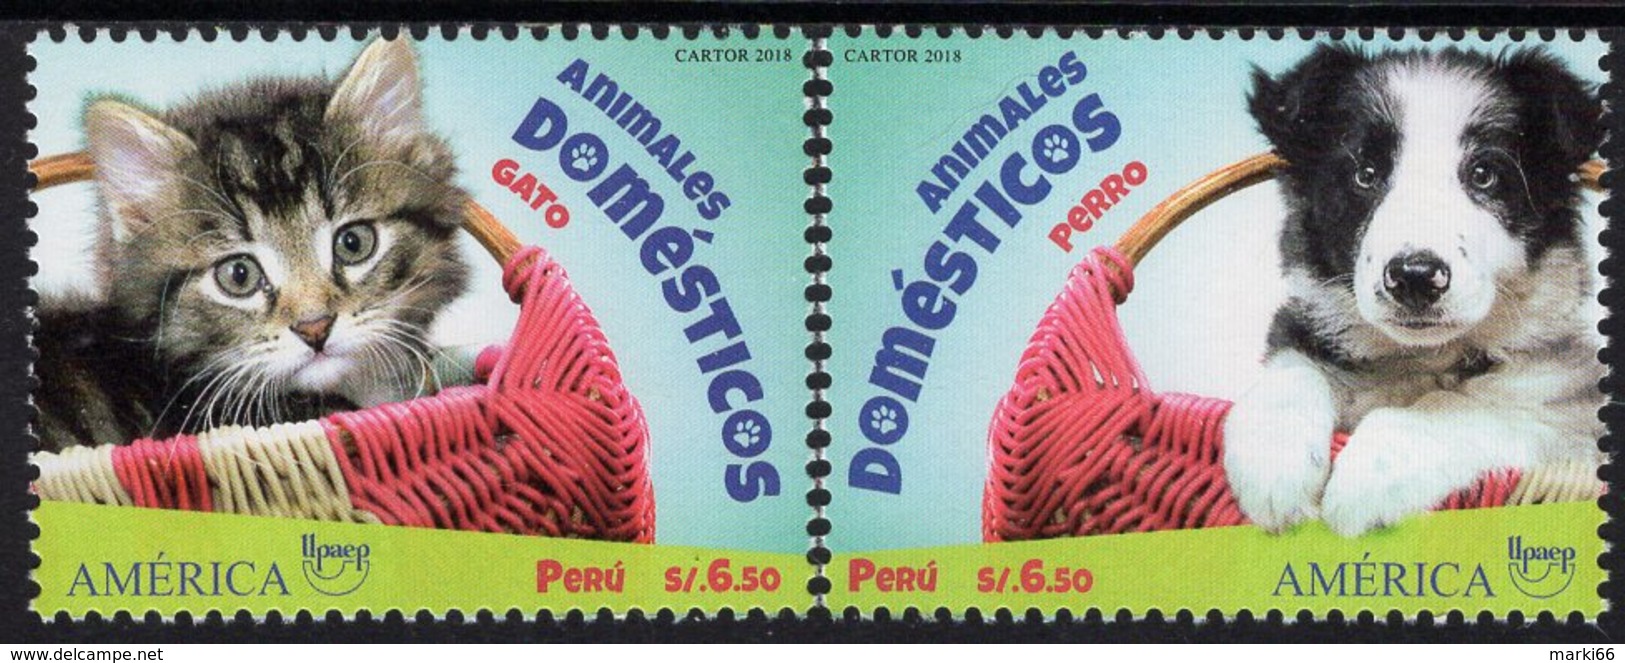 Peru - 2018 - America UPAEP - Domestic Animals - Cat And Dog - Mint Stamp Set - Peru